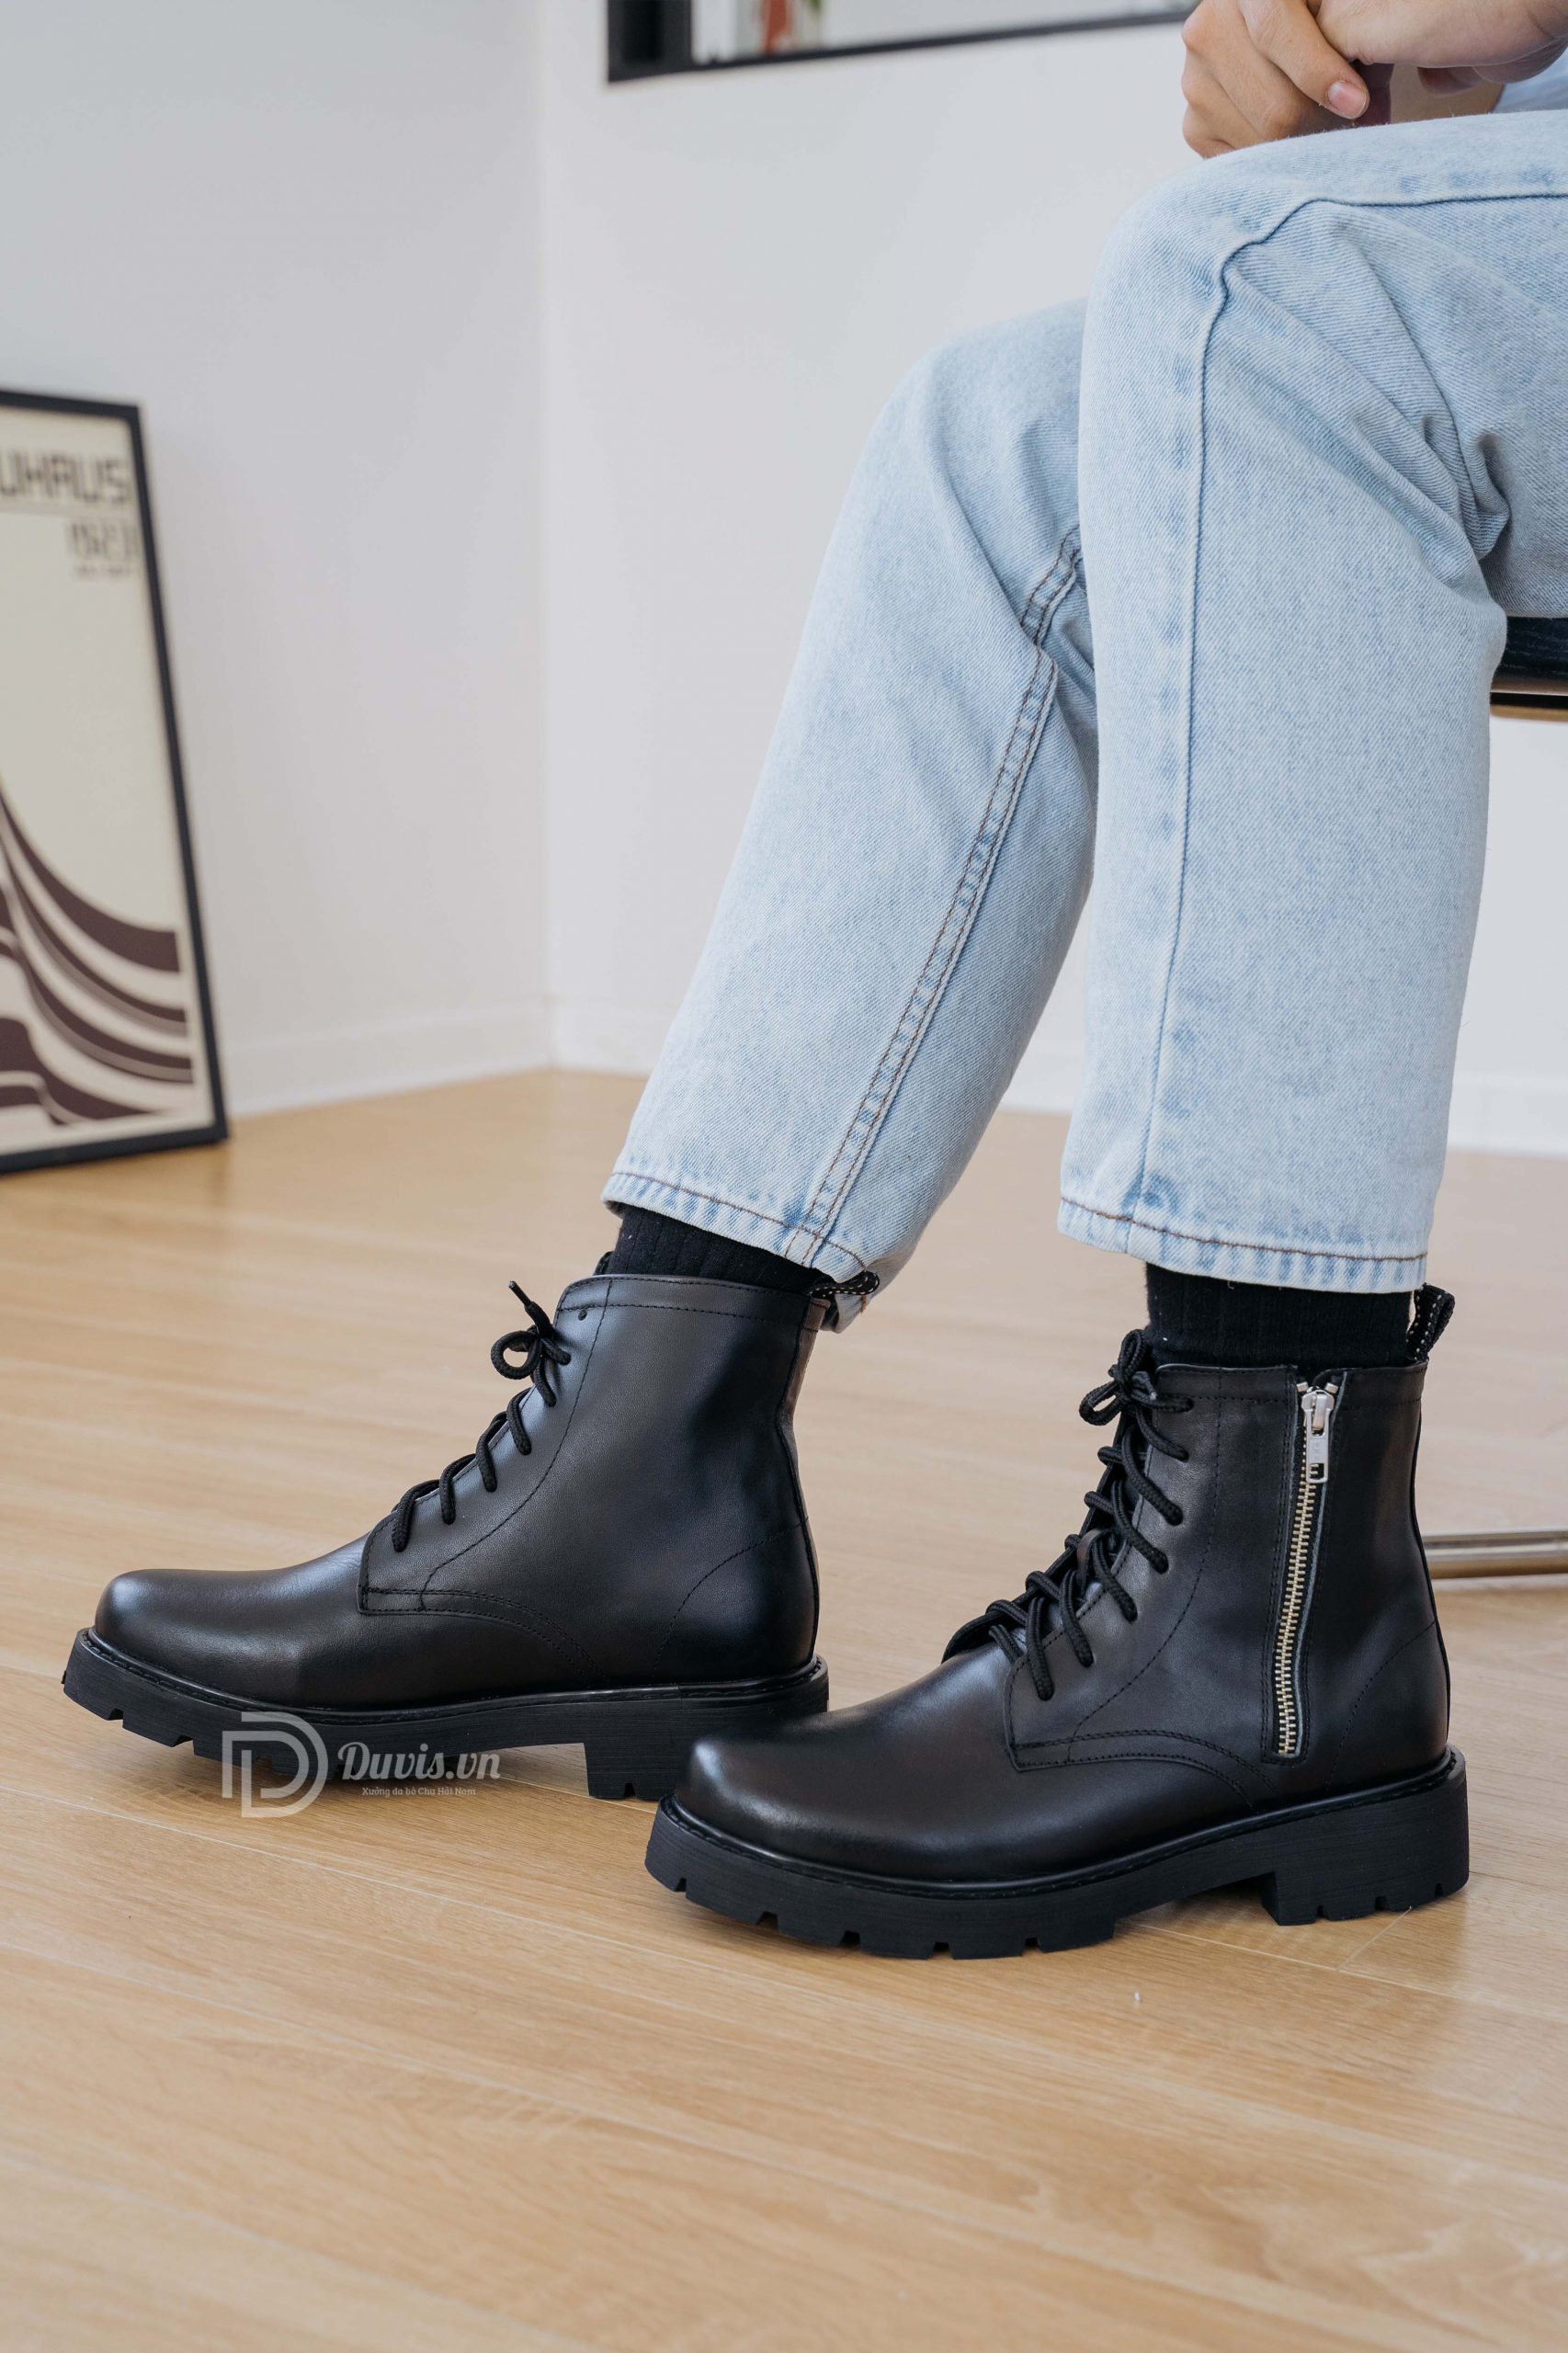 Chọn giày boot nam chính hãng theo hình dạng của giày và bàn chân của bạn